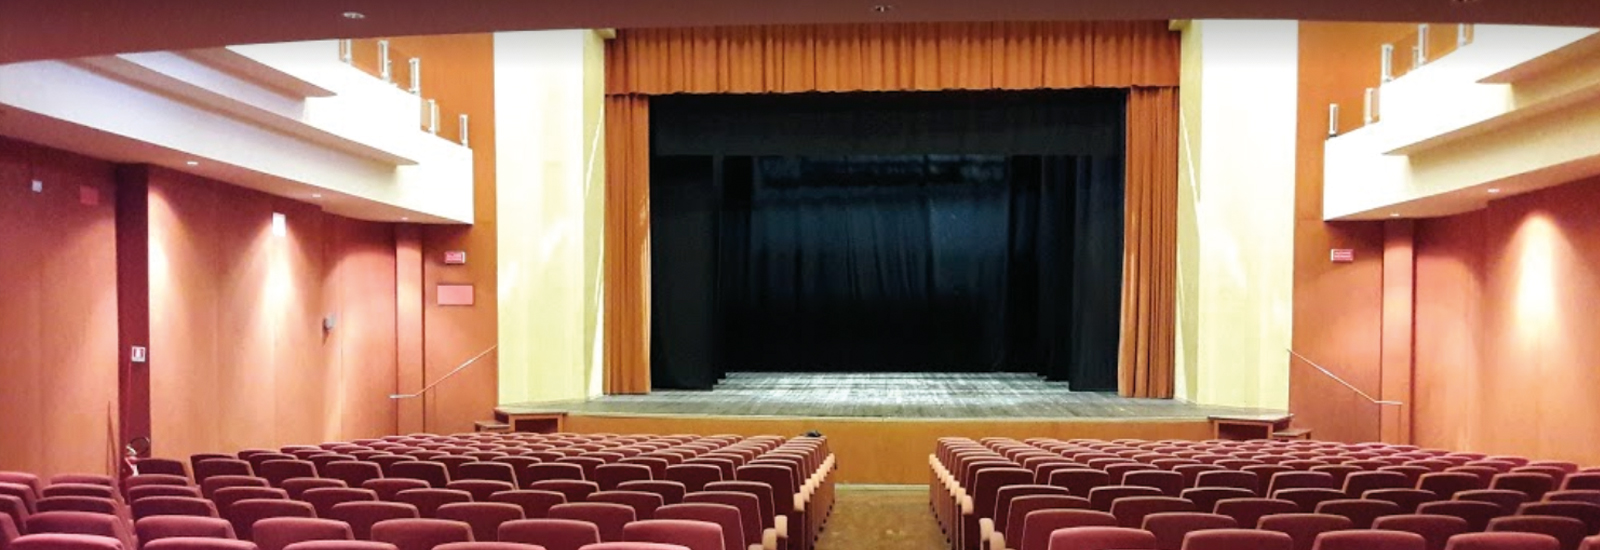 Teatro Morelli